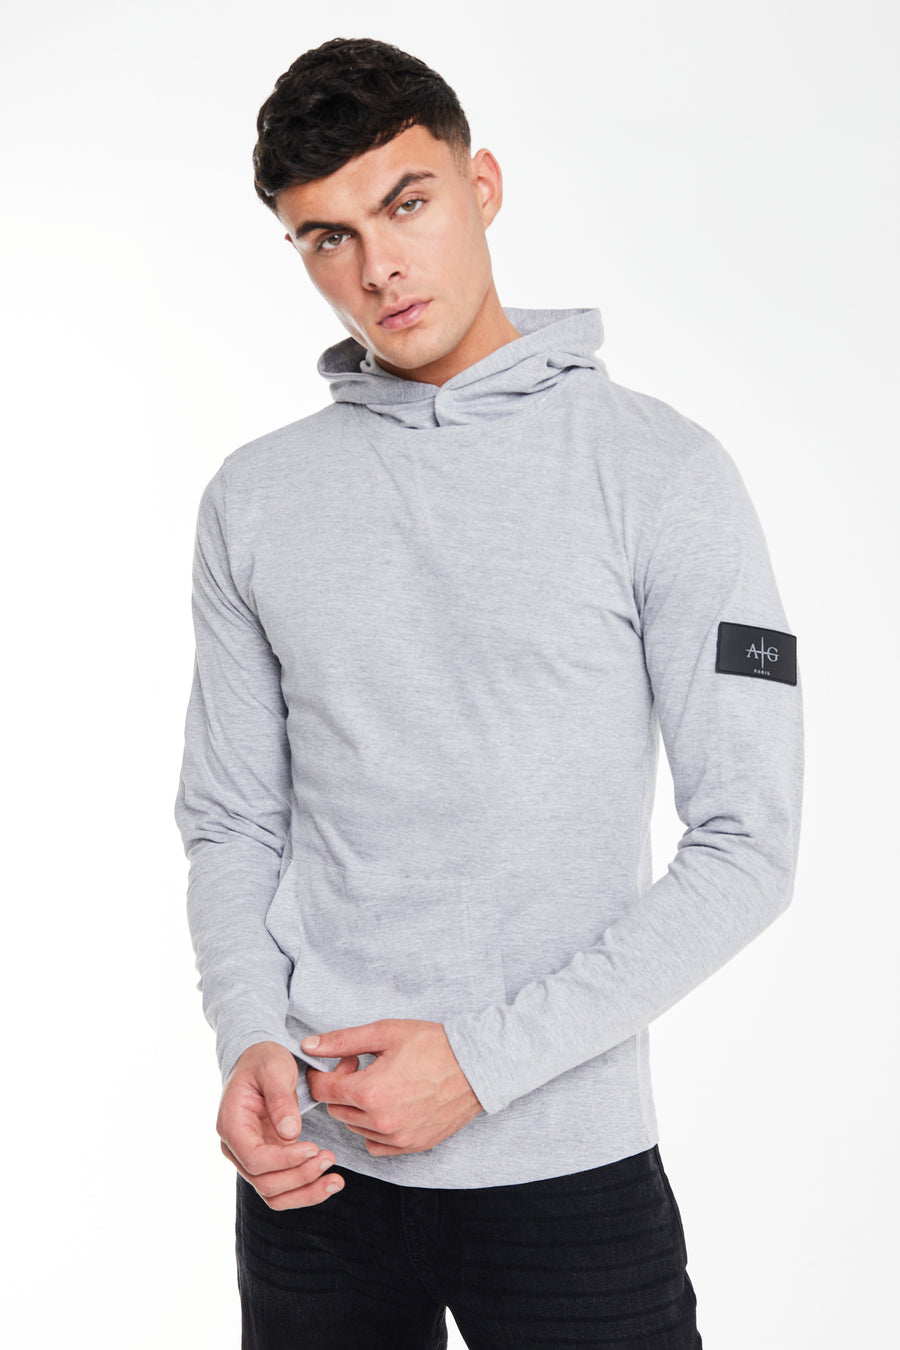 Grey men's hoodies sale 